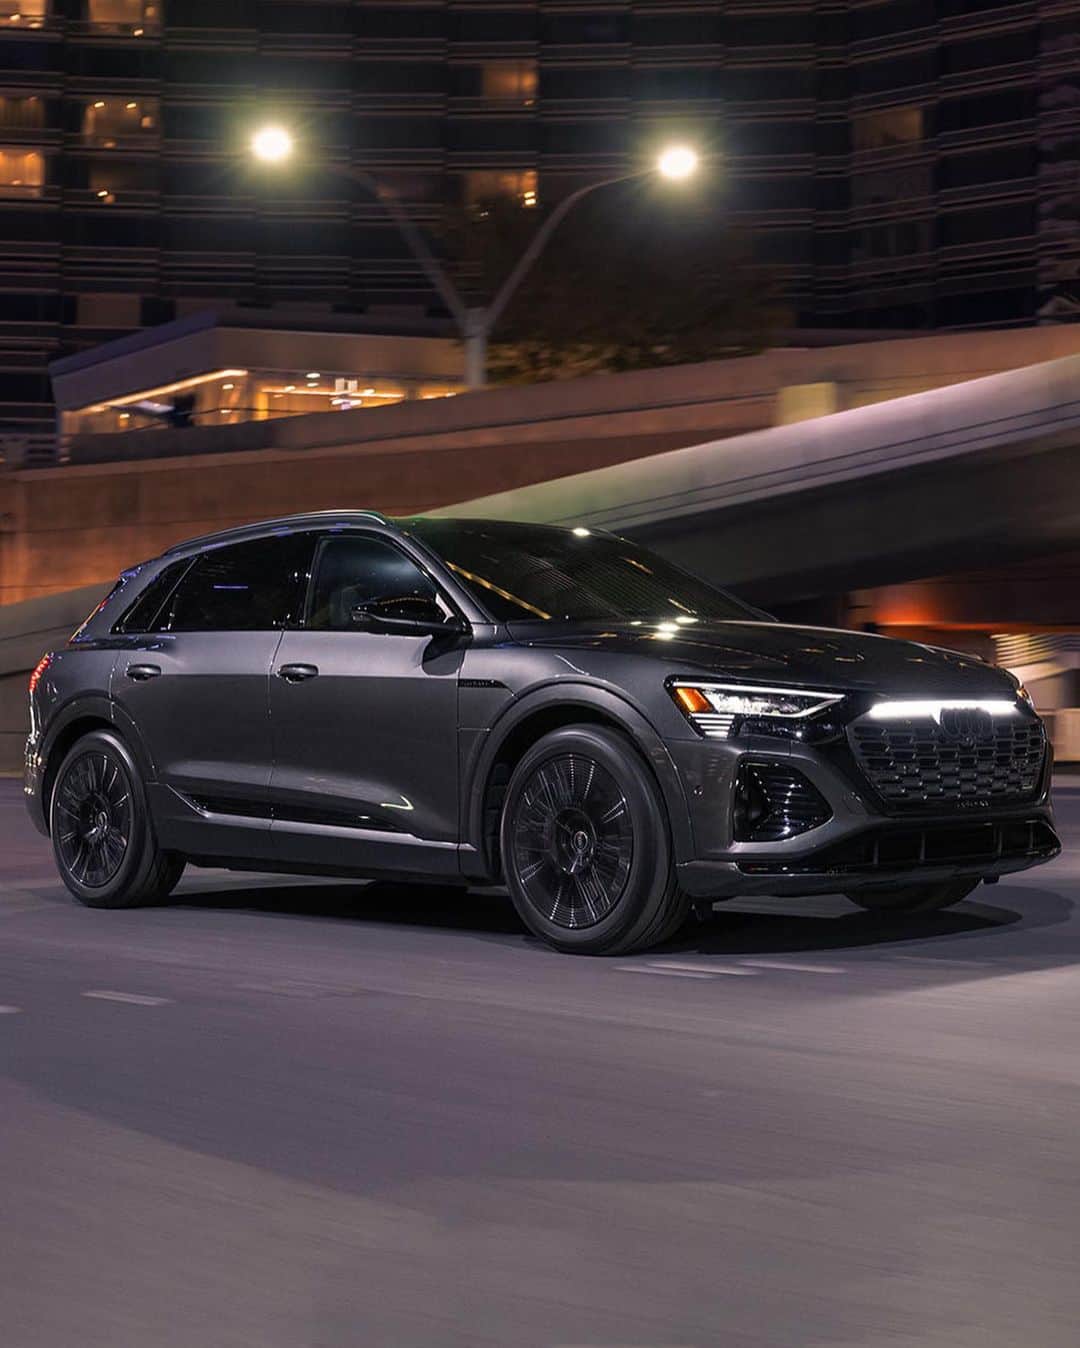 アウディ ジャパンのインスタグラム：「最新のデザイン言語をまとったシングルフレームグリル。​ その周囲を取り囲み、精悍な表情をつくるブラックのマスク。​ ​ 進化を示す新たなデザインのAudi Q8 Sportback e-tronが、革新を求め走り続ける。​ ​ *写真は米国仕様車です。日本仕様とは異なります。​ ​ ​ #AudiQ8Sportbacketron​ ​ #Audi #AudiJapan #アウディ #アウディジャパン​ #FutureIsAnAttitude #その進化が未来を創る​ #AudiQ8etron #アウディQ8Sportbacketron #アウディQ8etron #電気自動車 #EV #emobility #サステイナブル #AudiLife #Audigram #CarLife #CarLifeStyle #GermanCars #アウディのある生活 #アウディのある風景」